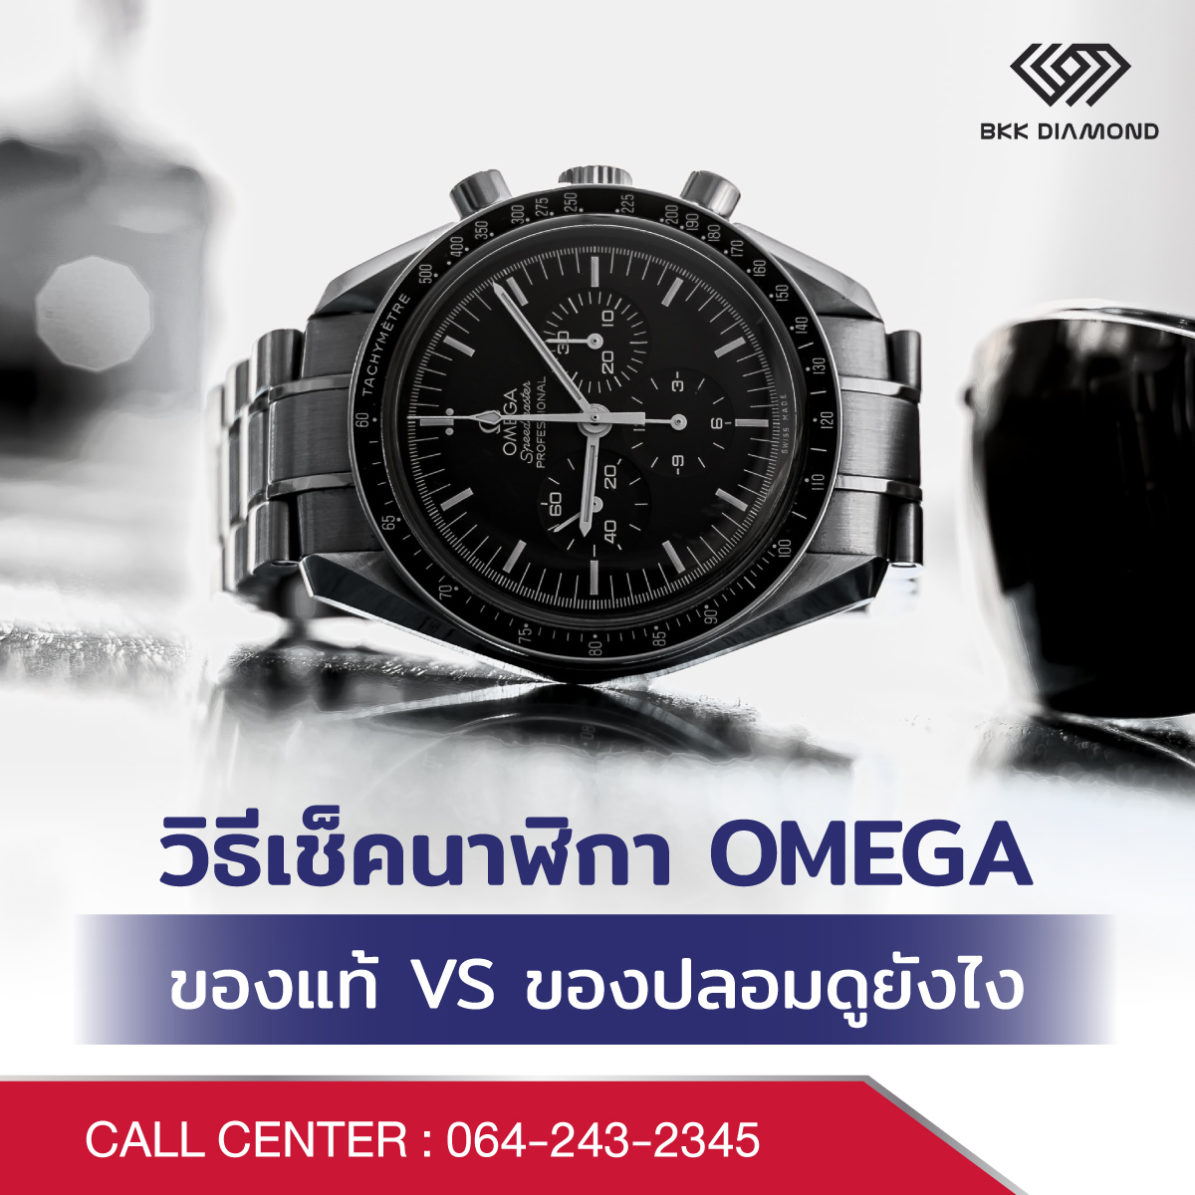 วิธีเช็คนาฬิกา Omega ของแท้ VS ของปลอมดูยังไง